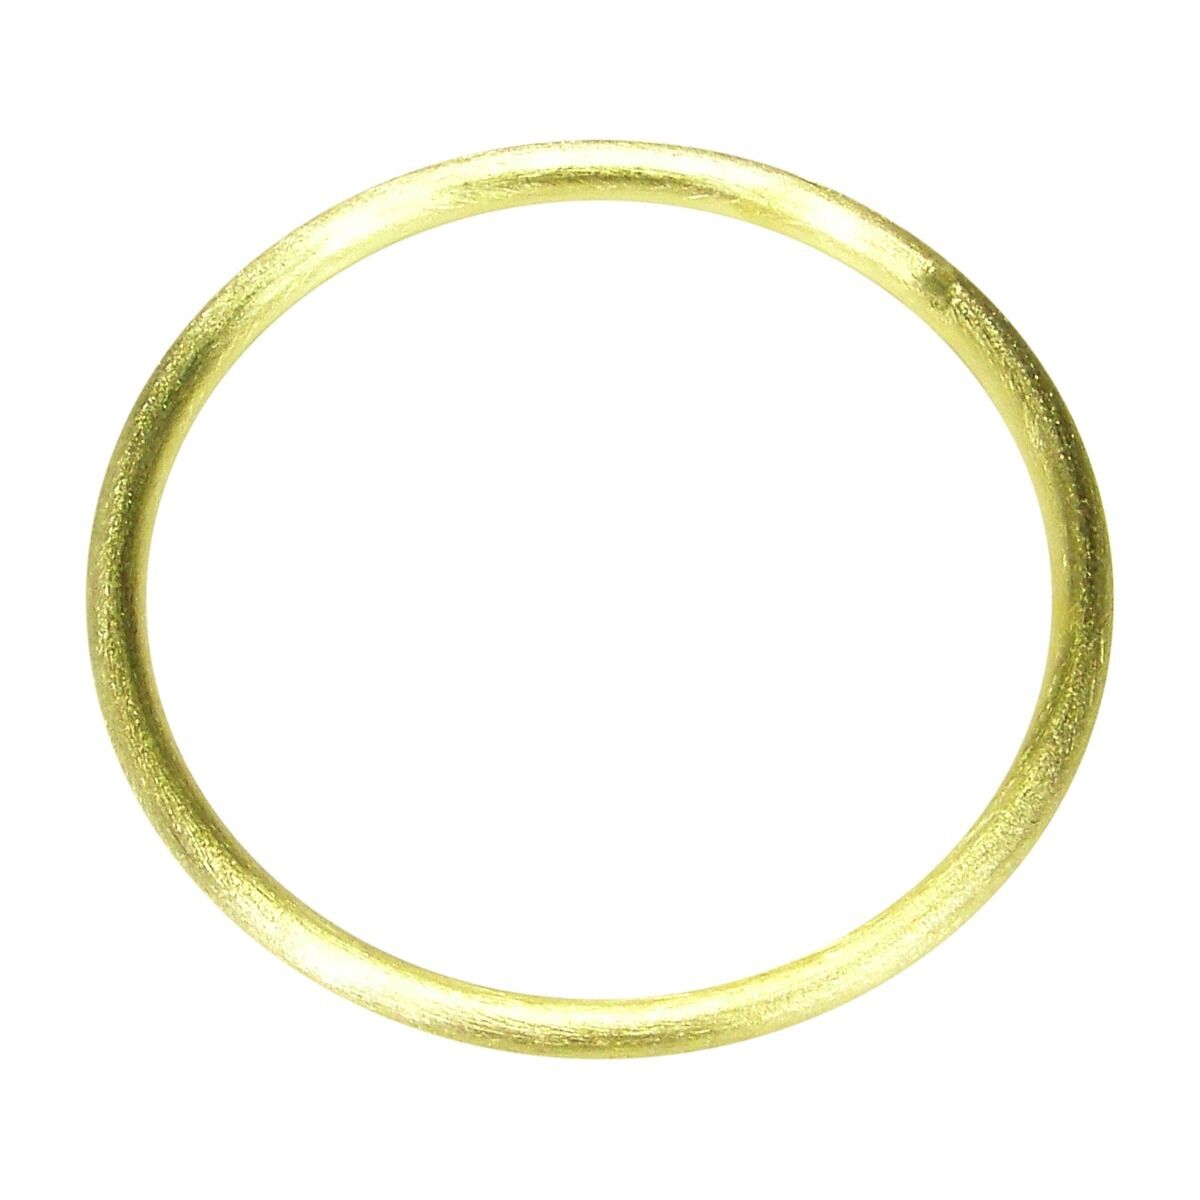 Sheila Fajl Thin Tubular Bangle Bracelet in Brushed Gold Plated